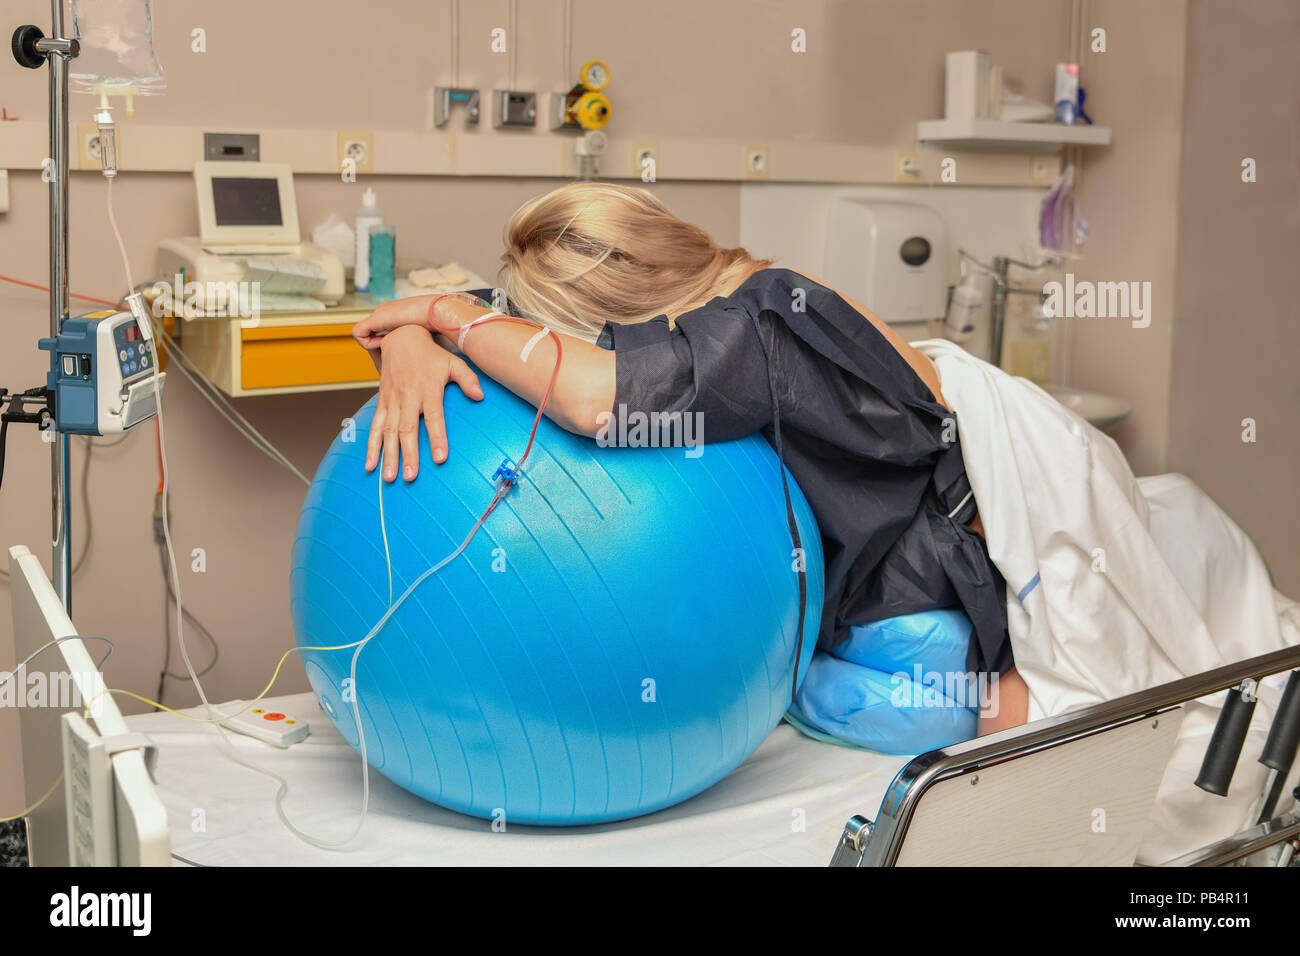 Die Frau während der Wehen auf einer Fitness Ball Geburt Krankenhaus Stockfoto